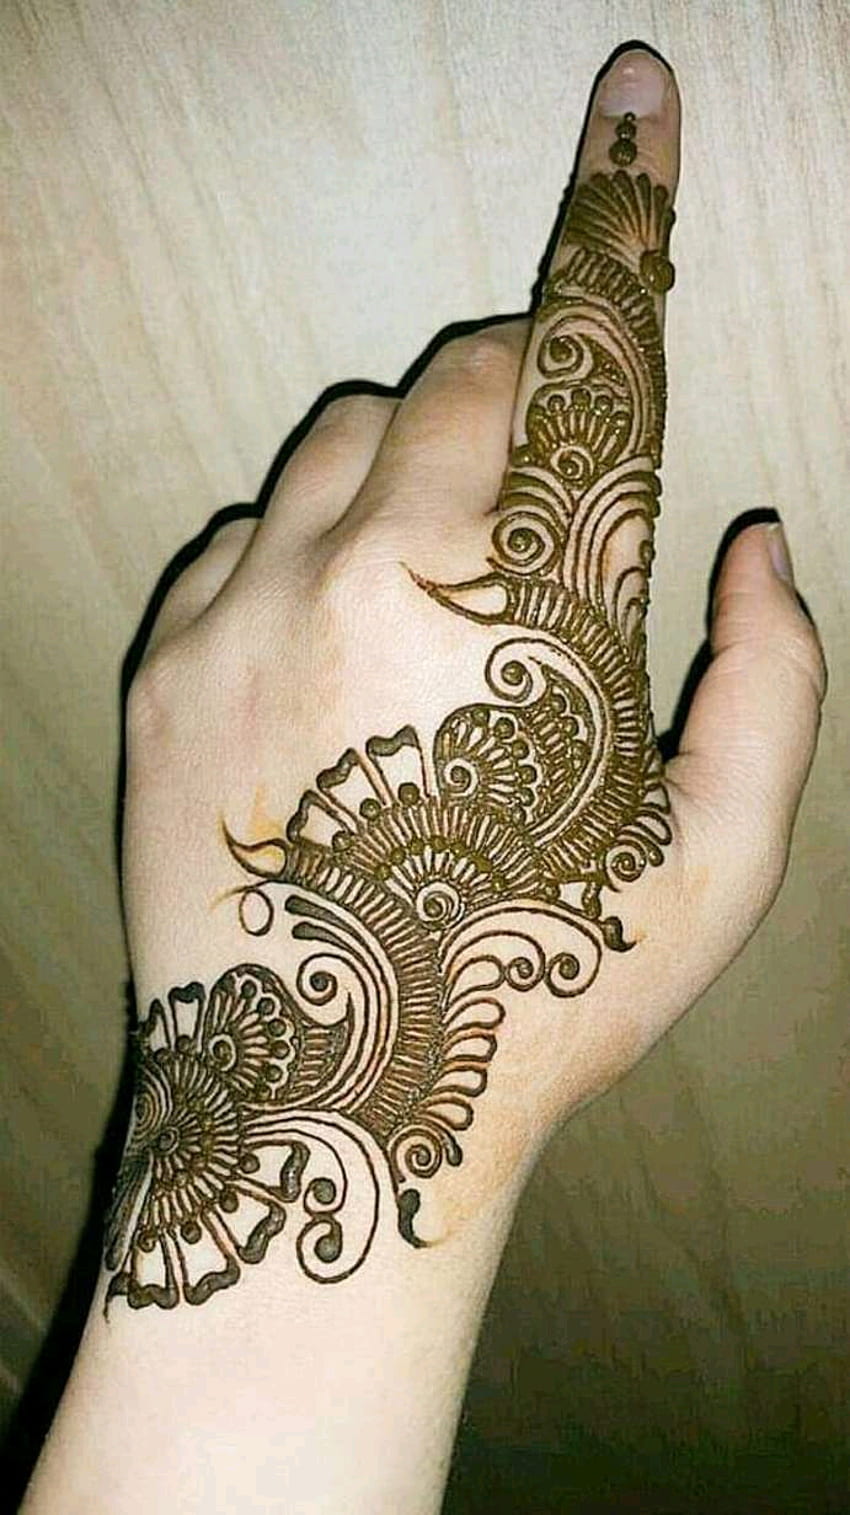 Simple Mehndi Design: सुंदर और आकर्षक मेहंदी डिजाइन, जो हाथ को बनाये बेहद  खूबसूरत